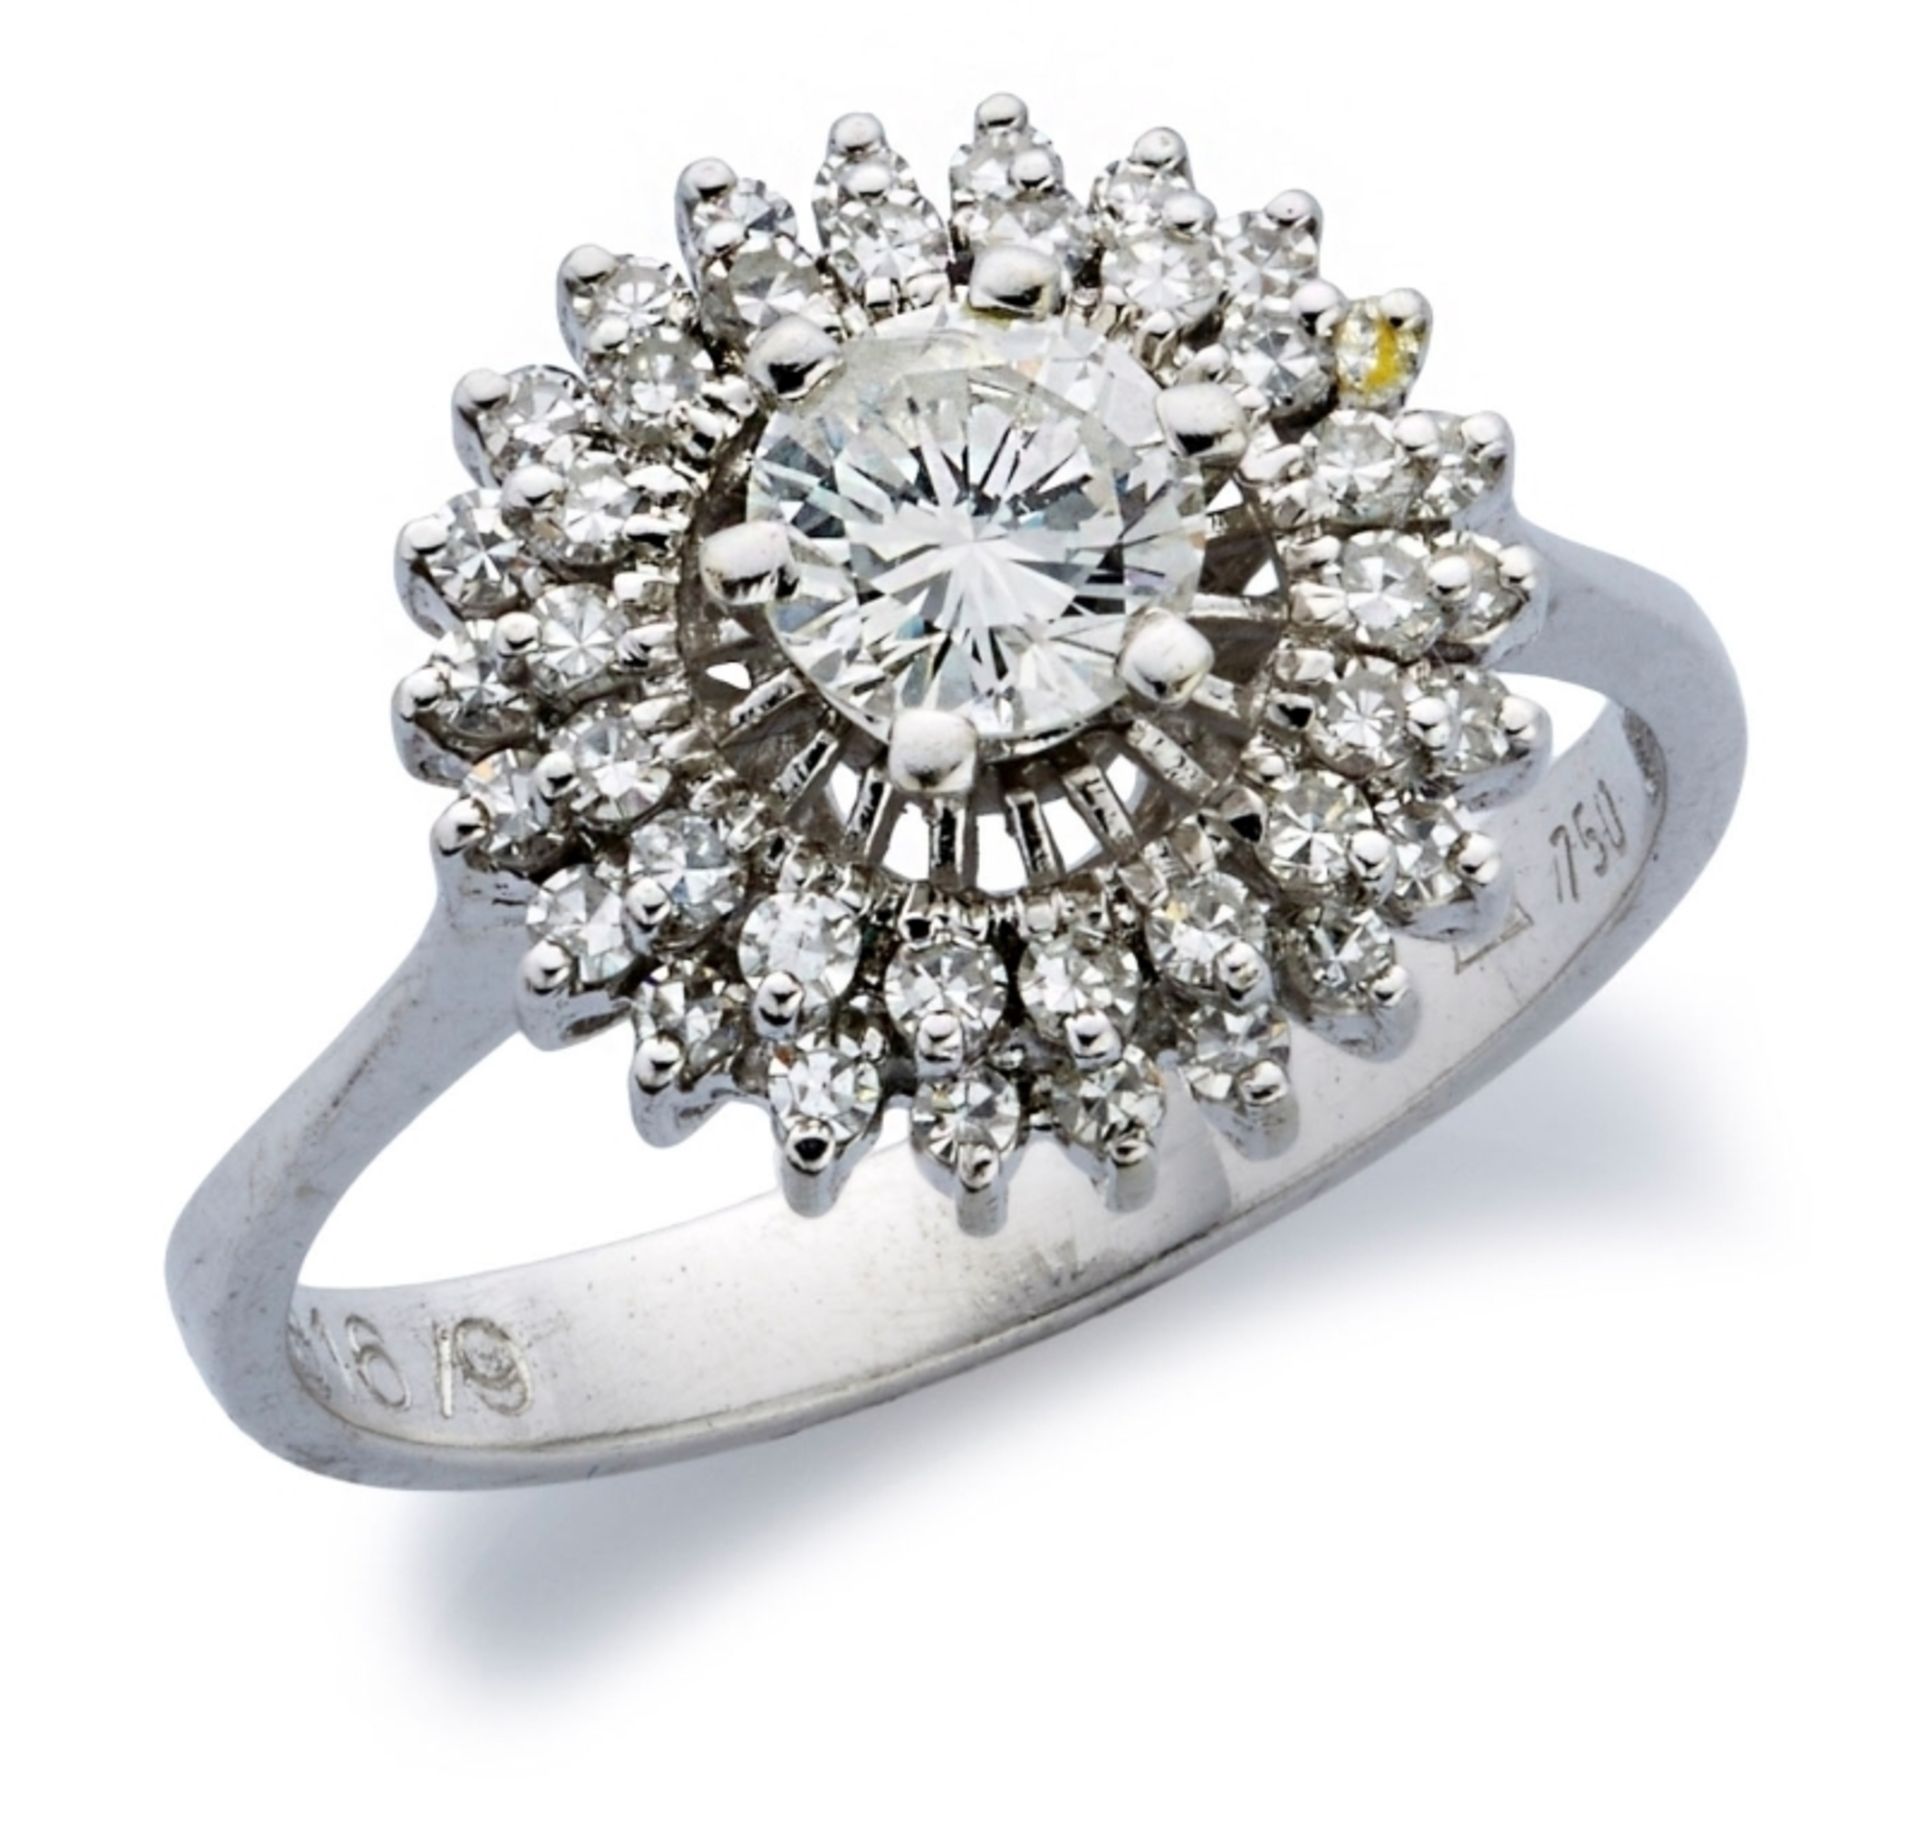 Diamant-Ring, Weissgold, mit 1 Brillant von ca. 0,50 ct sowie Achtkant-Diamanten.